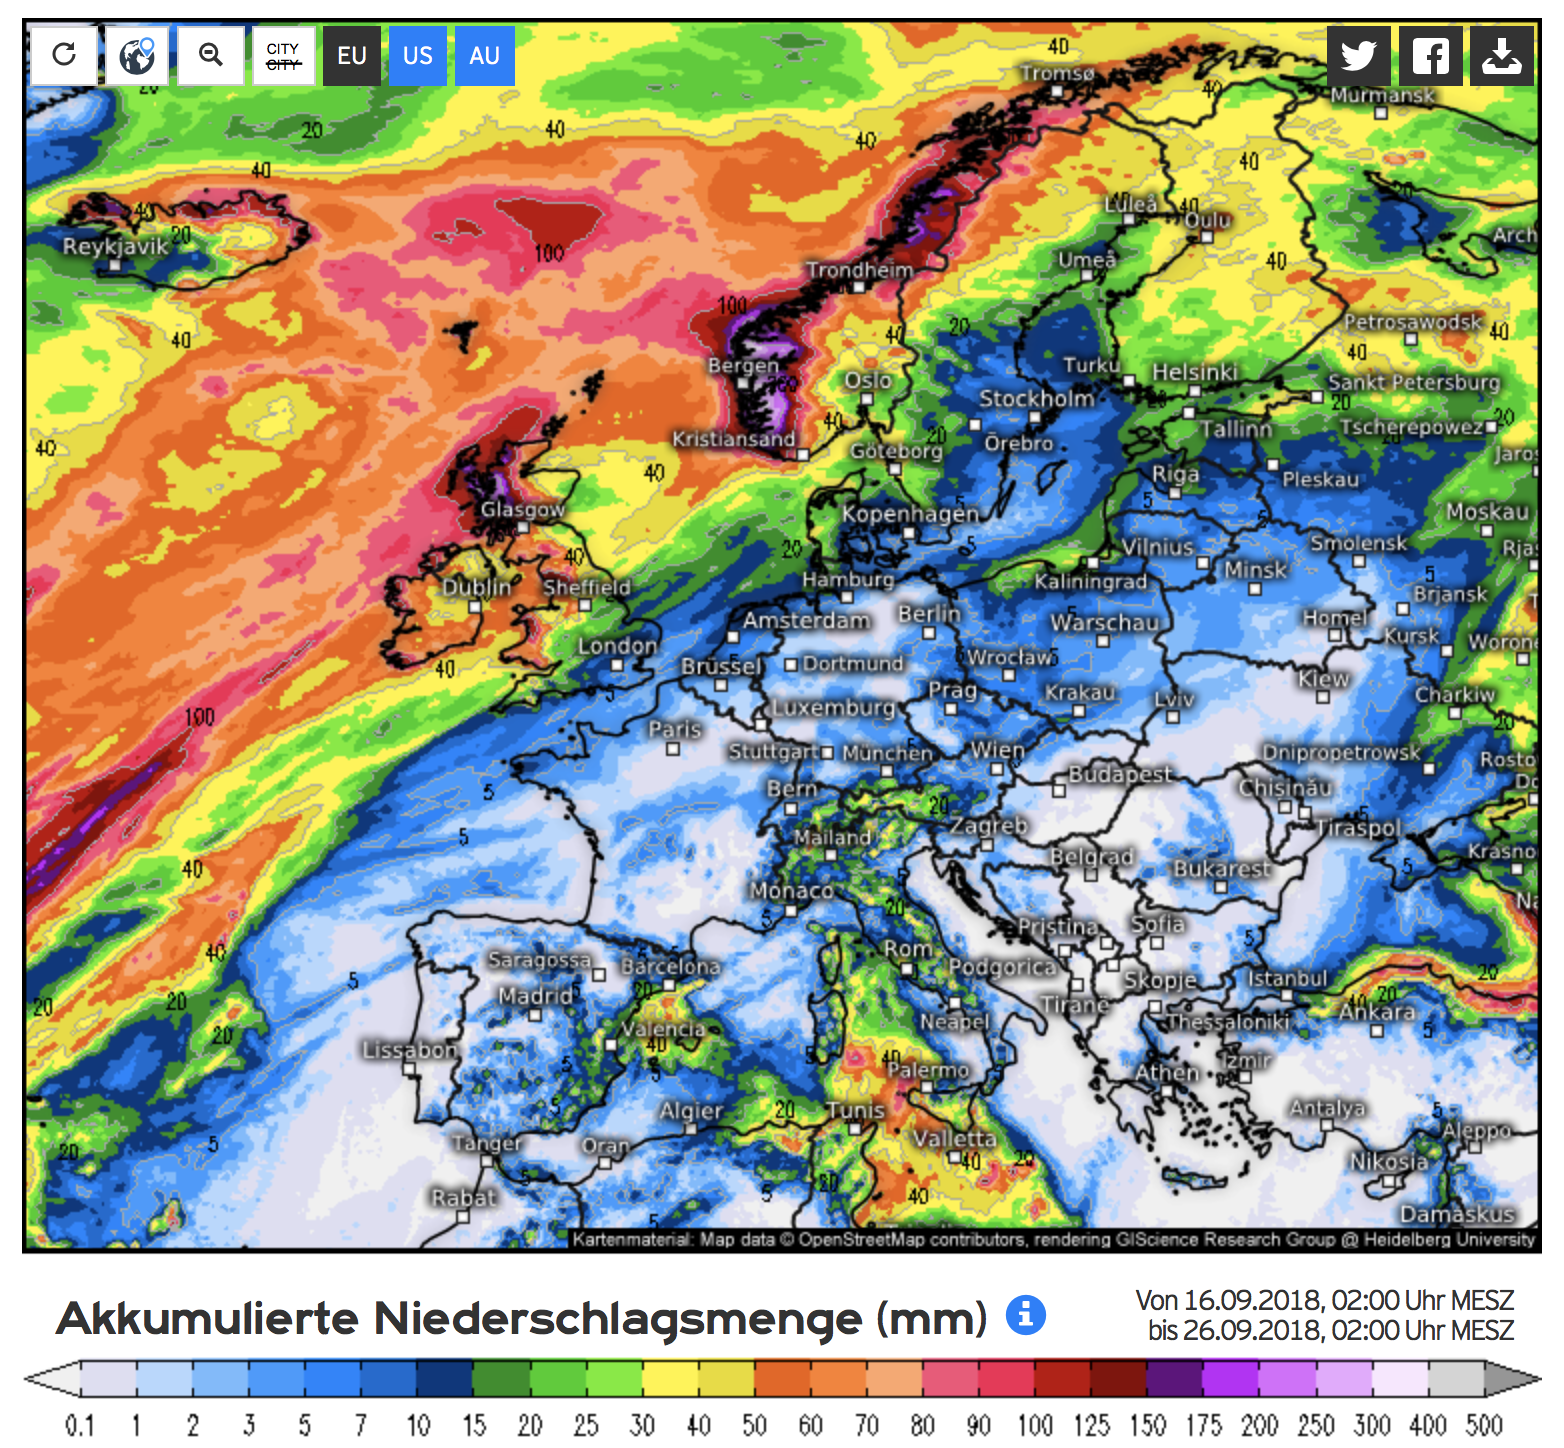 Neerslagverdeling Europa komende 10 dagen volgens het ECMWF model (bron Kachelmannwetter.com)